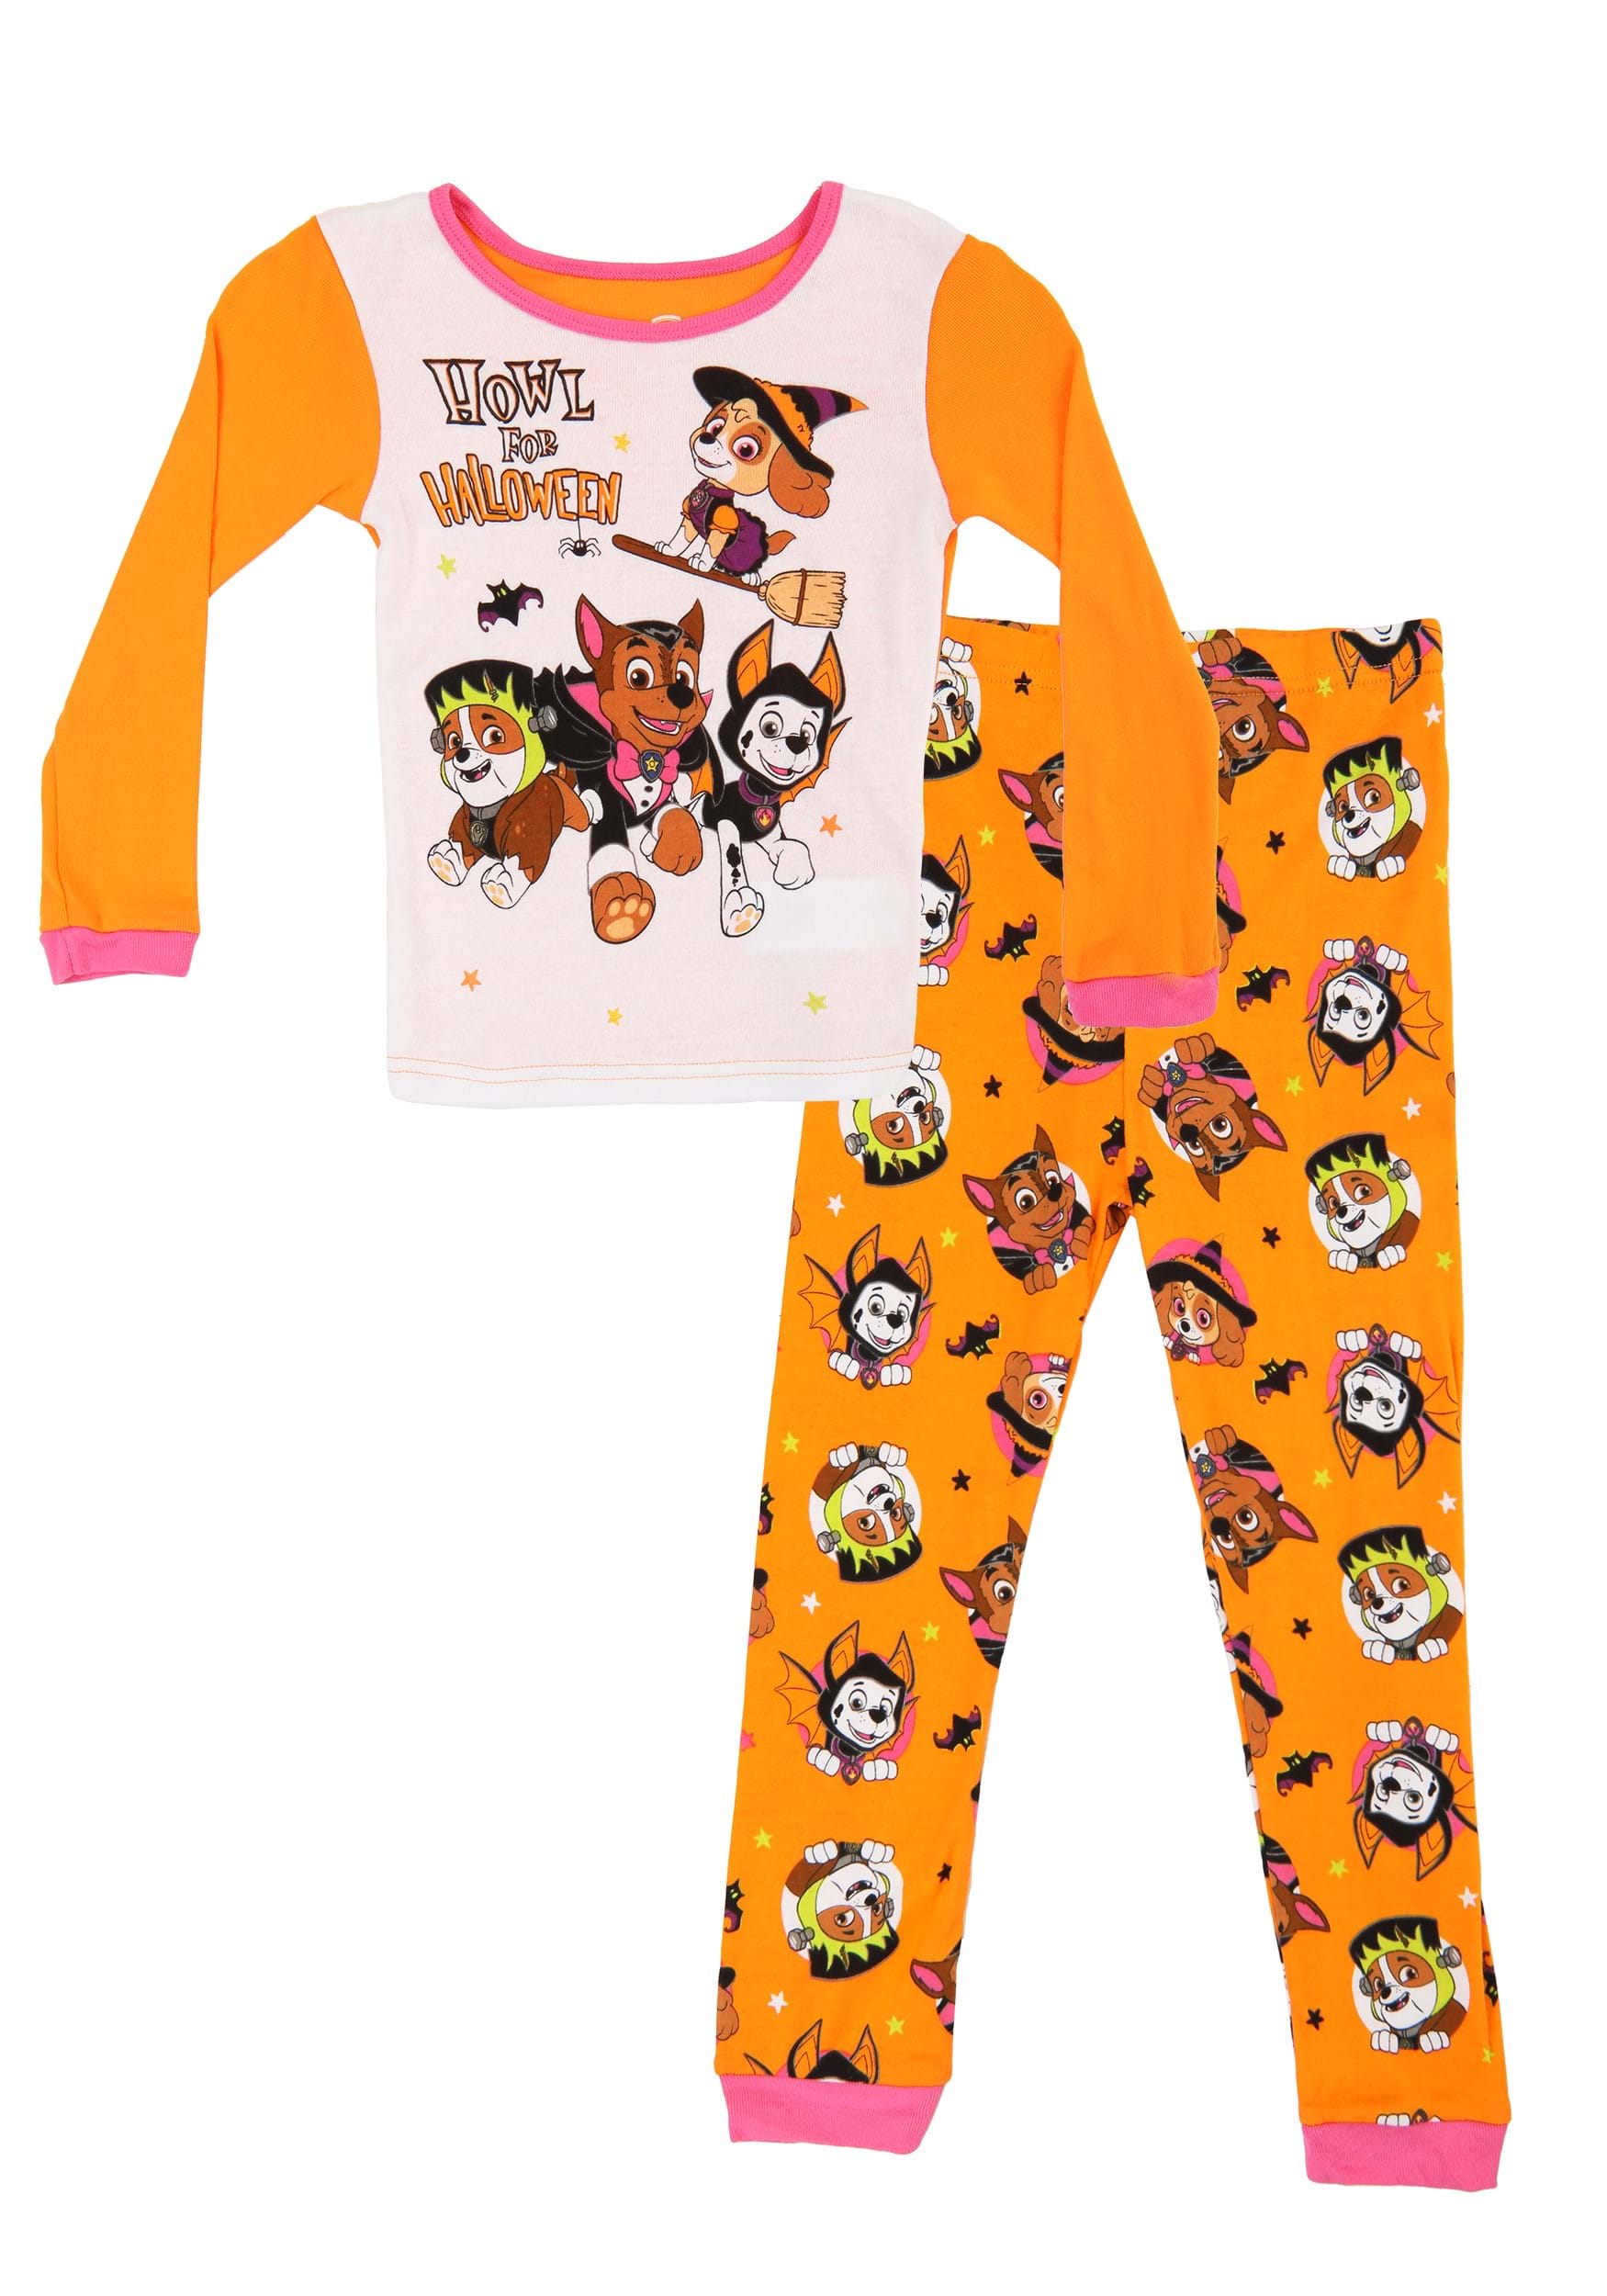 Toddler Girls Paw Patrol Howl for Halloween Pajamas | Pajama Sets and Loungewear